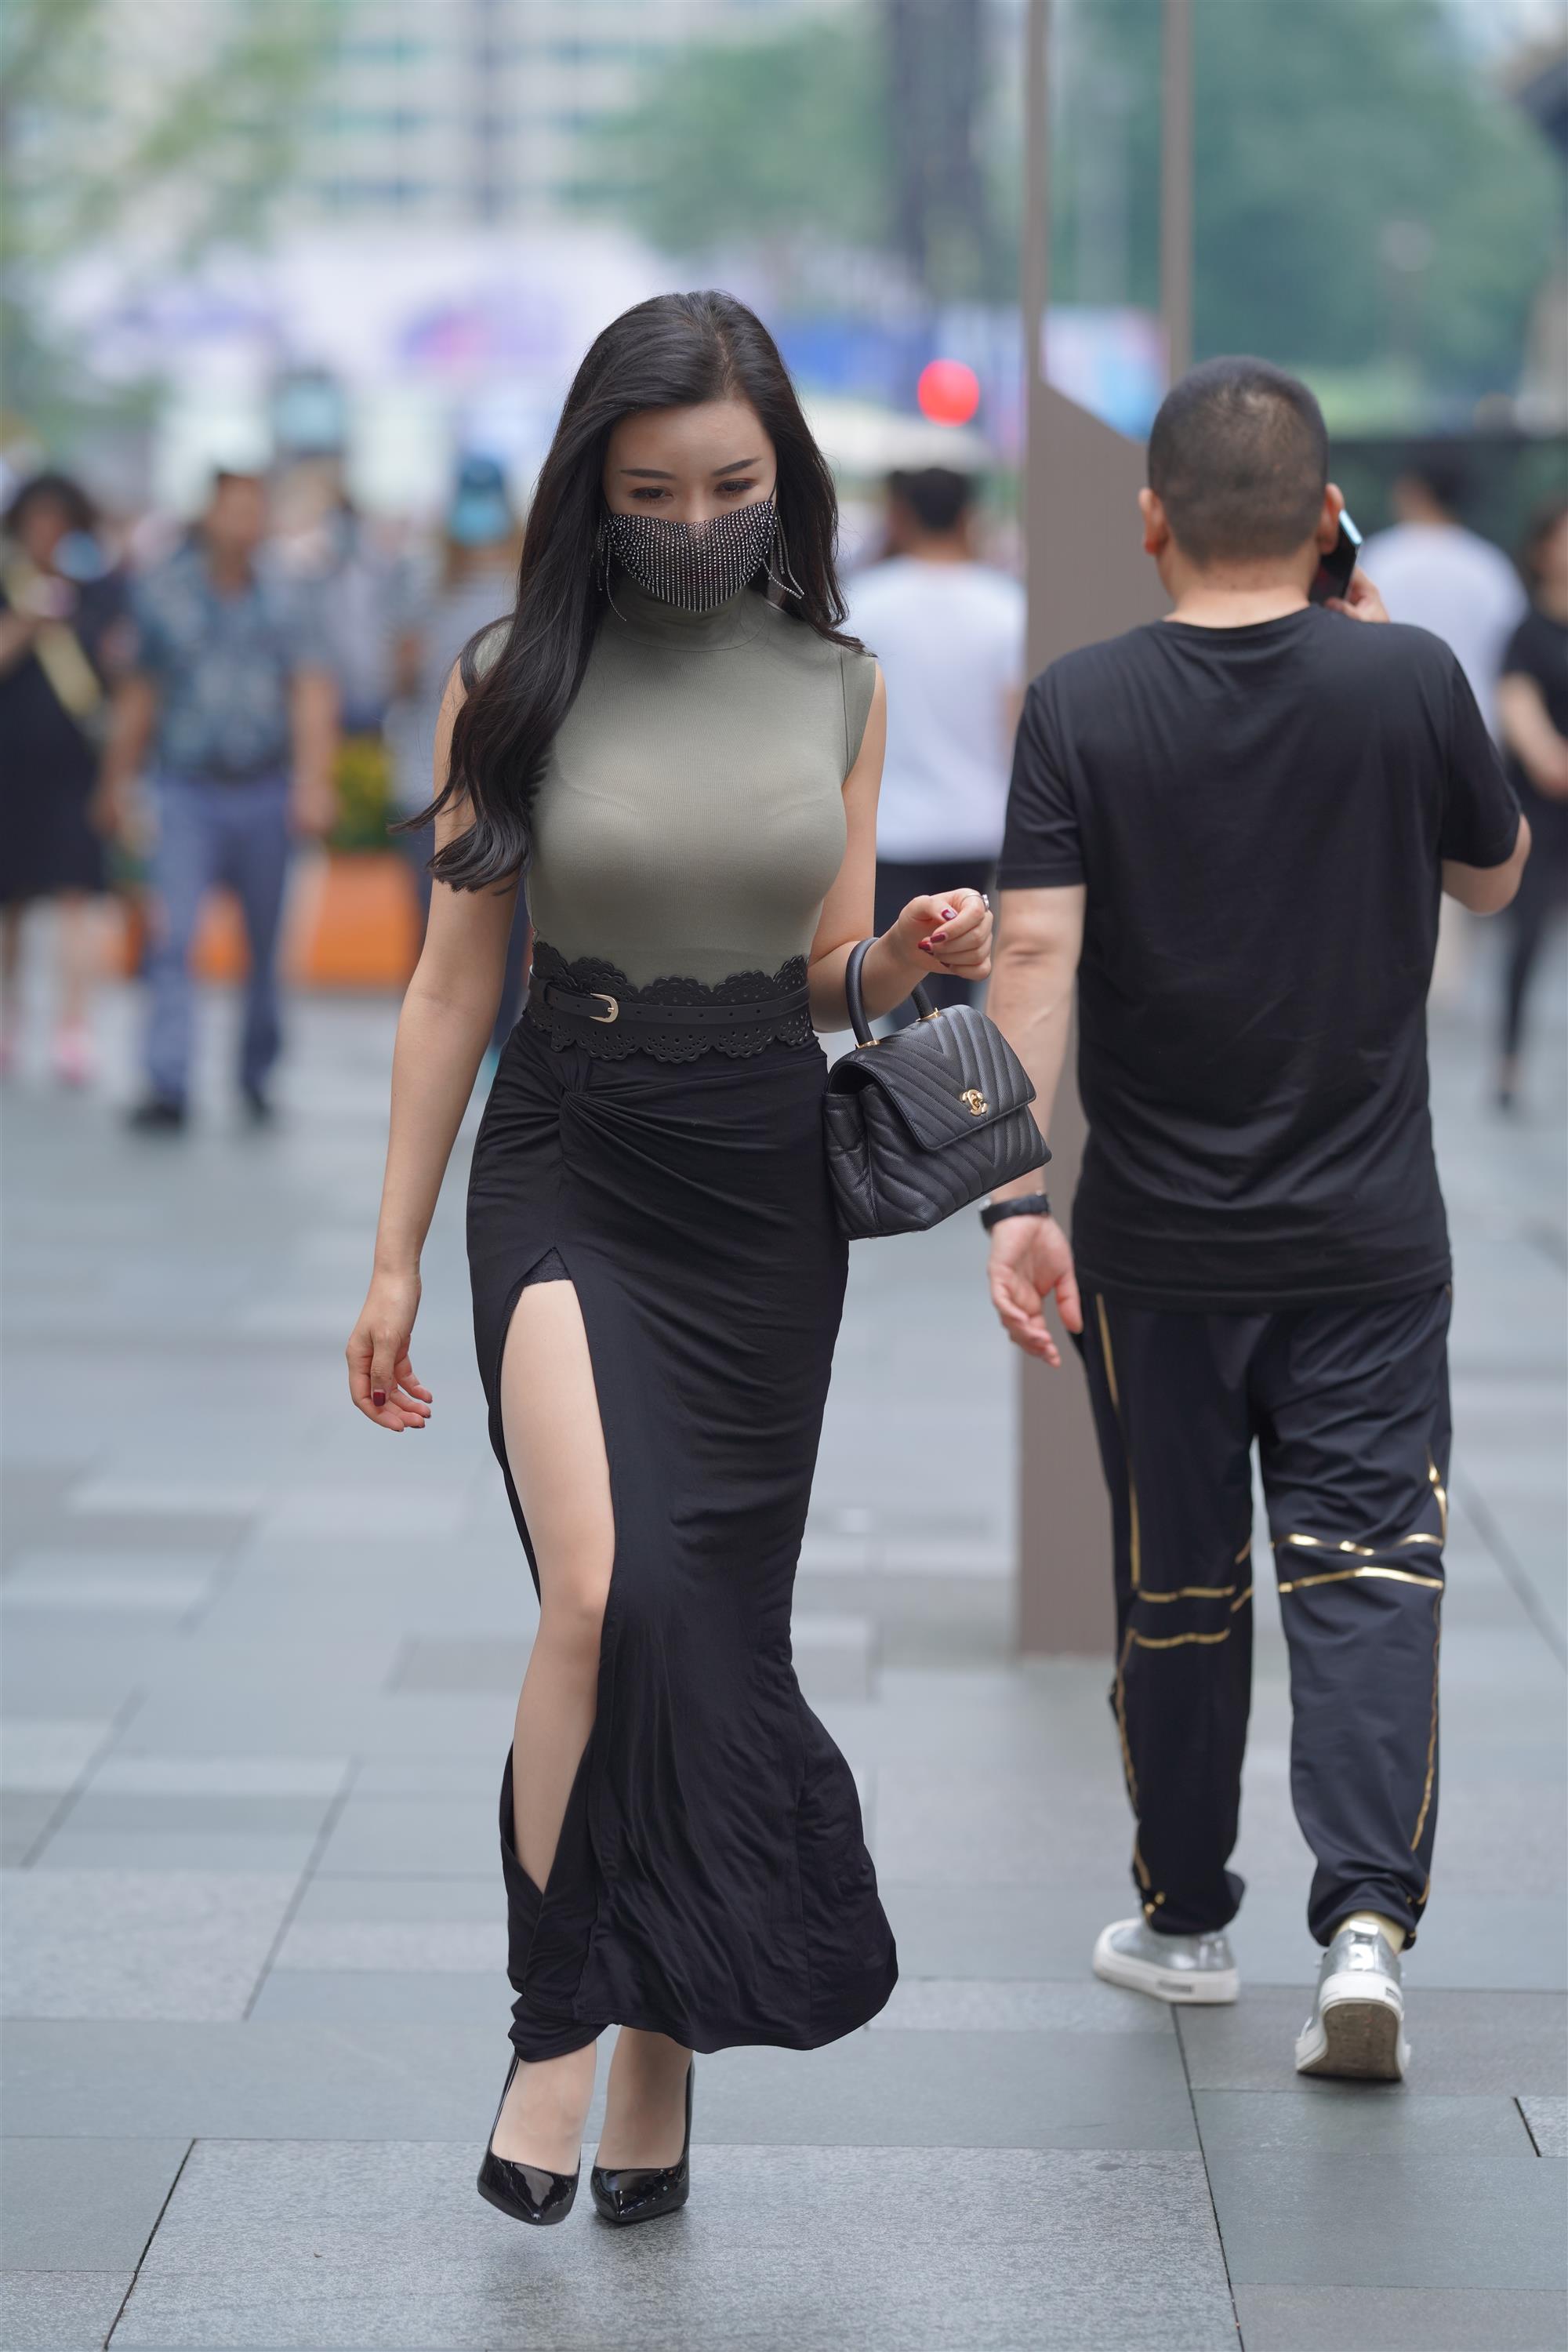 Street 欣儿 Long black skirt - 9.jpg